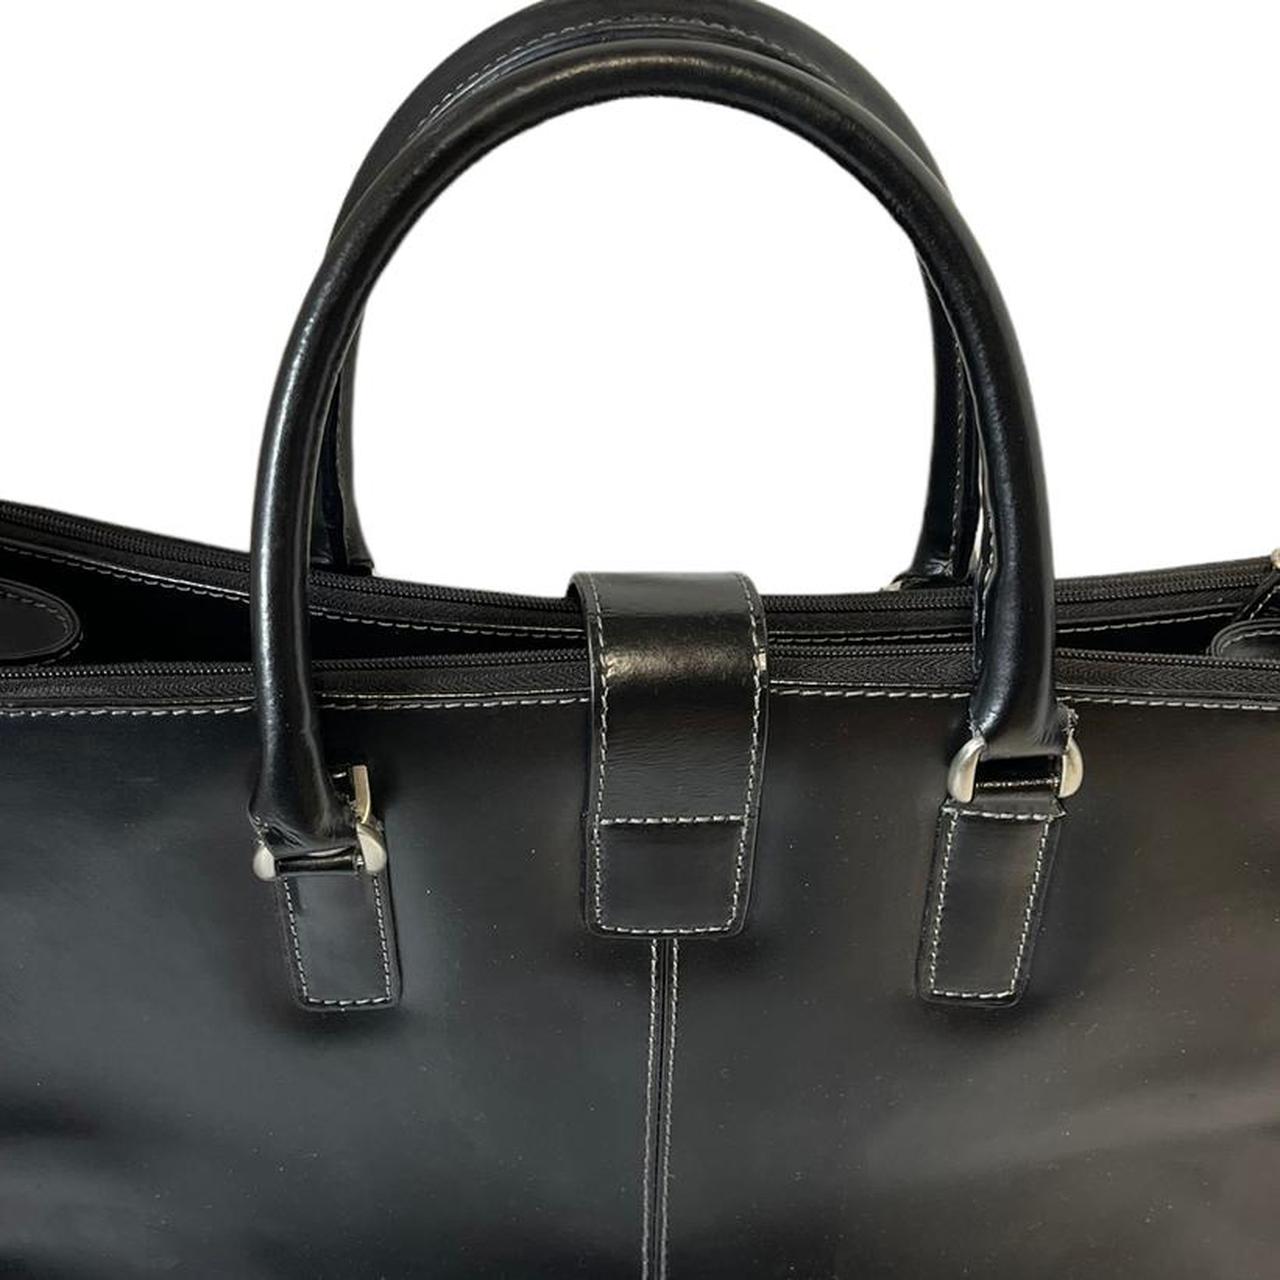 Franklin Covey” Black Faux Leather Laptop Bag / - Depop